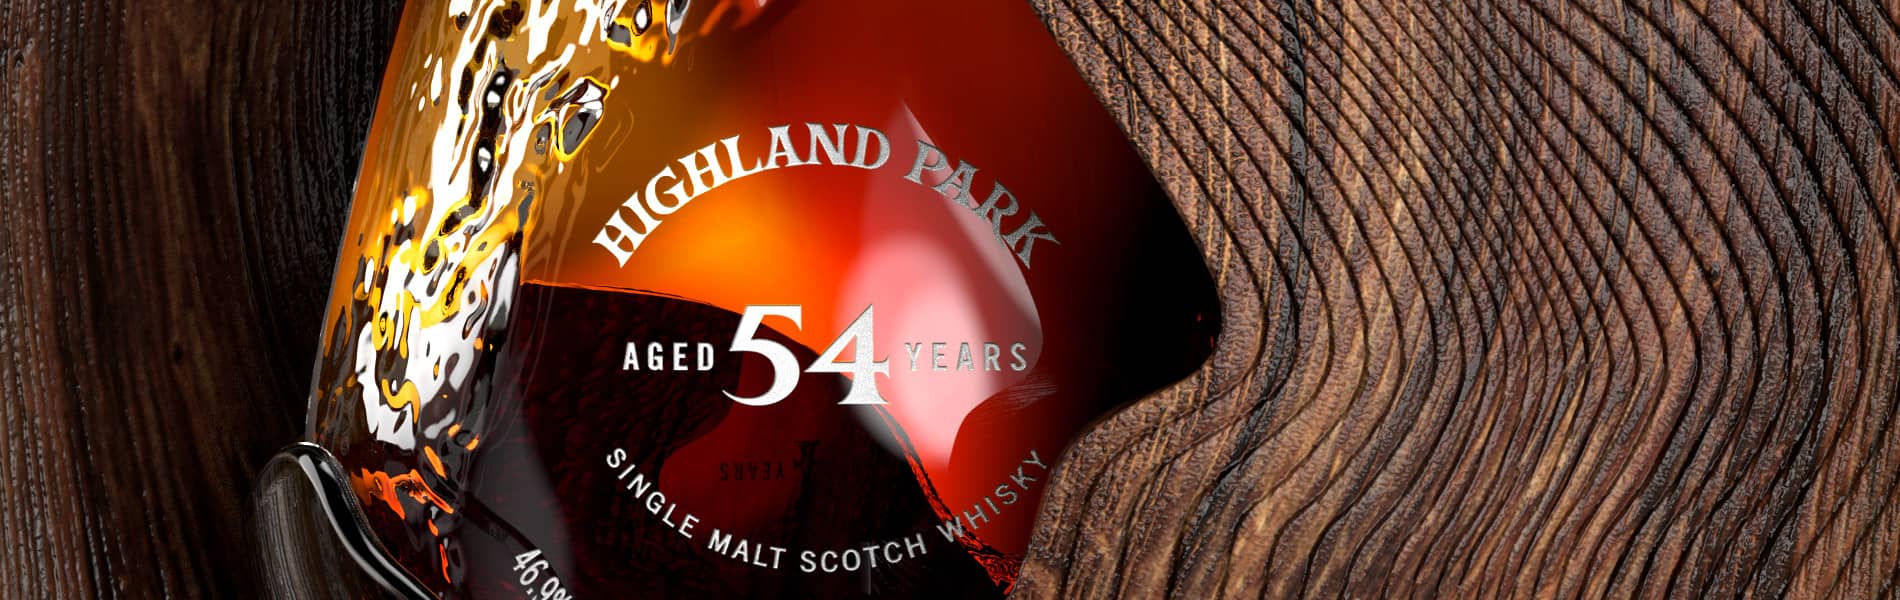 Highland Park 54 ans et l’heure de la crise existentielle